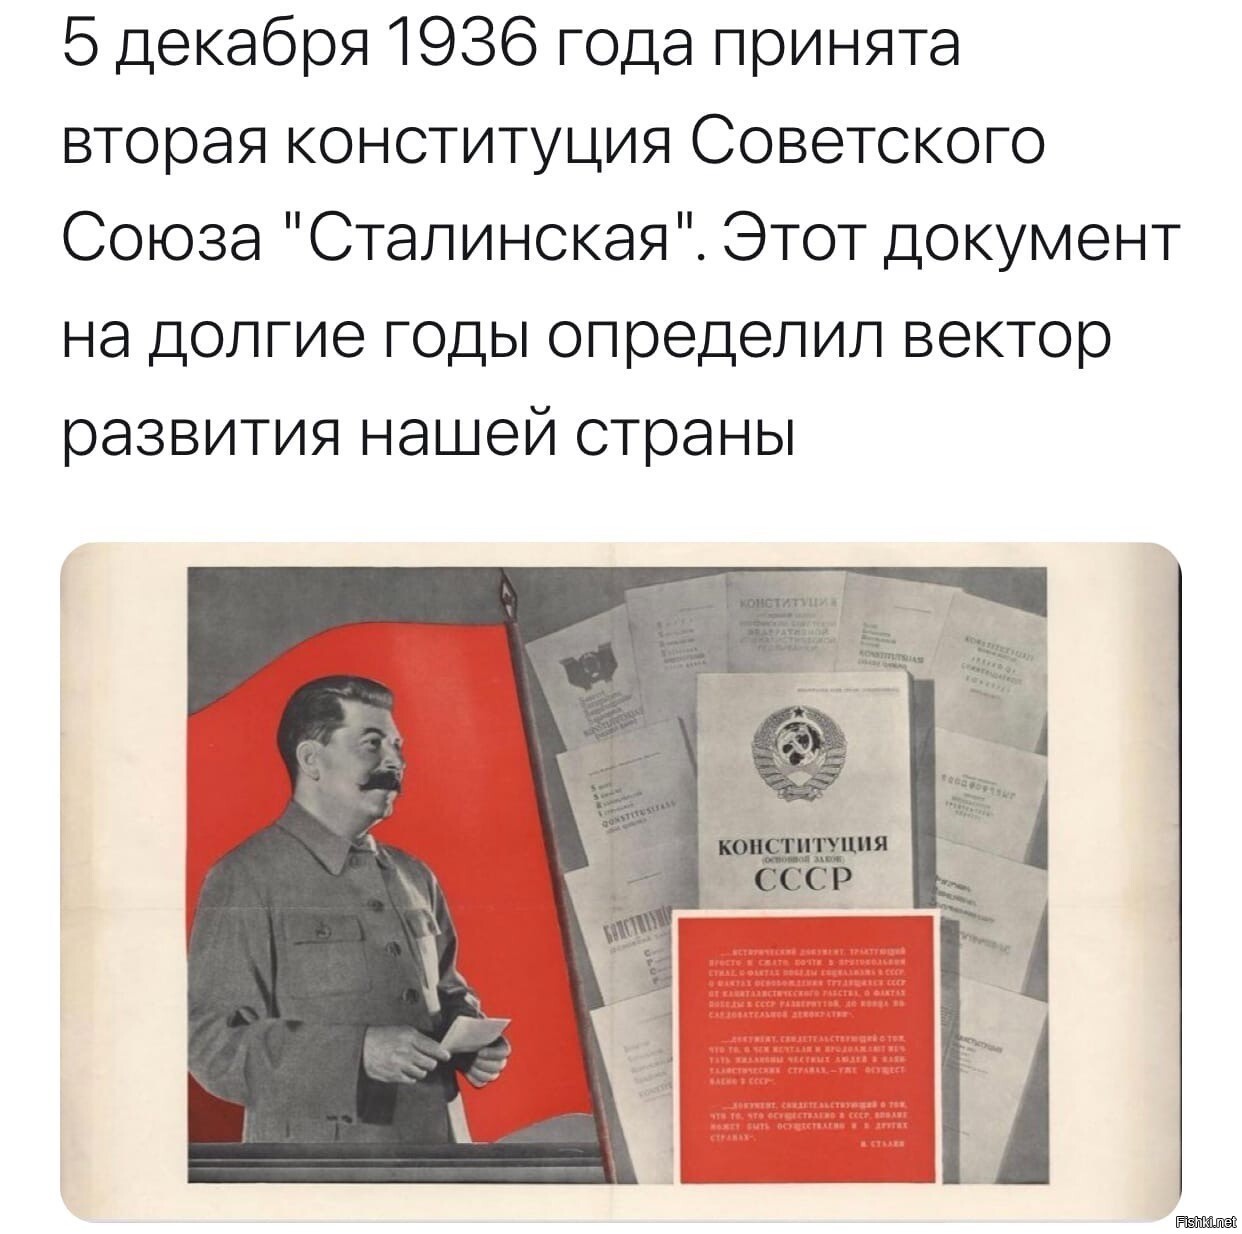 5 декабря 1936 года. Конституция 1936 года. Конституция СССР 1936. Сталинская Конституция 1936 года плакат. Открытки 1936 года.